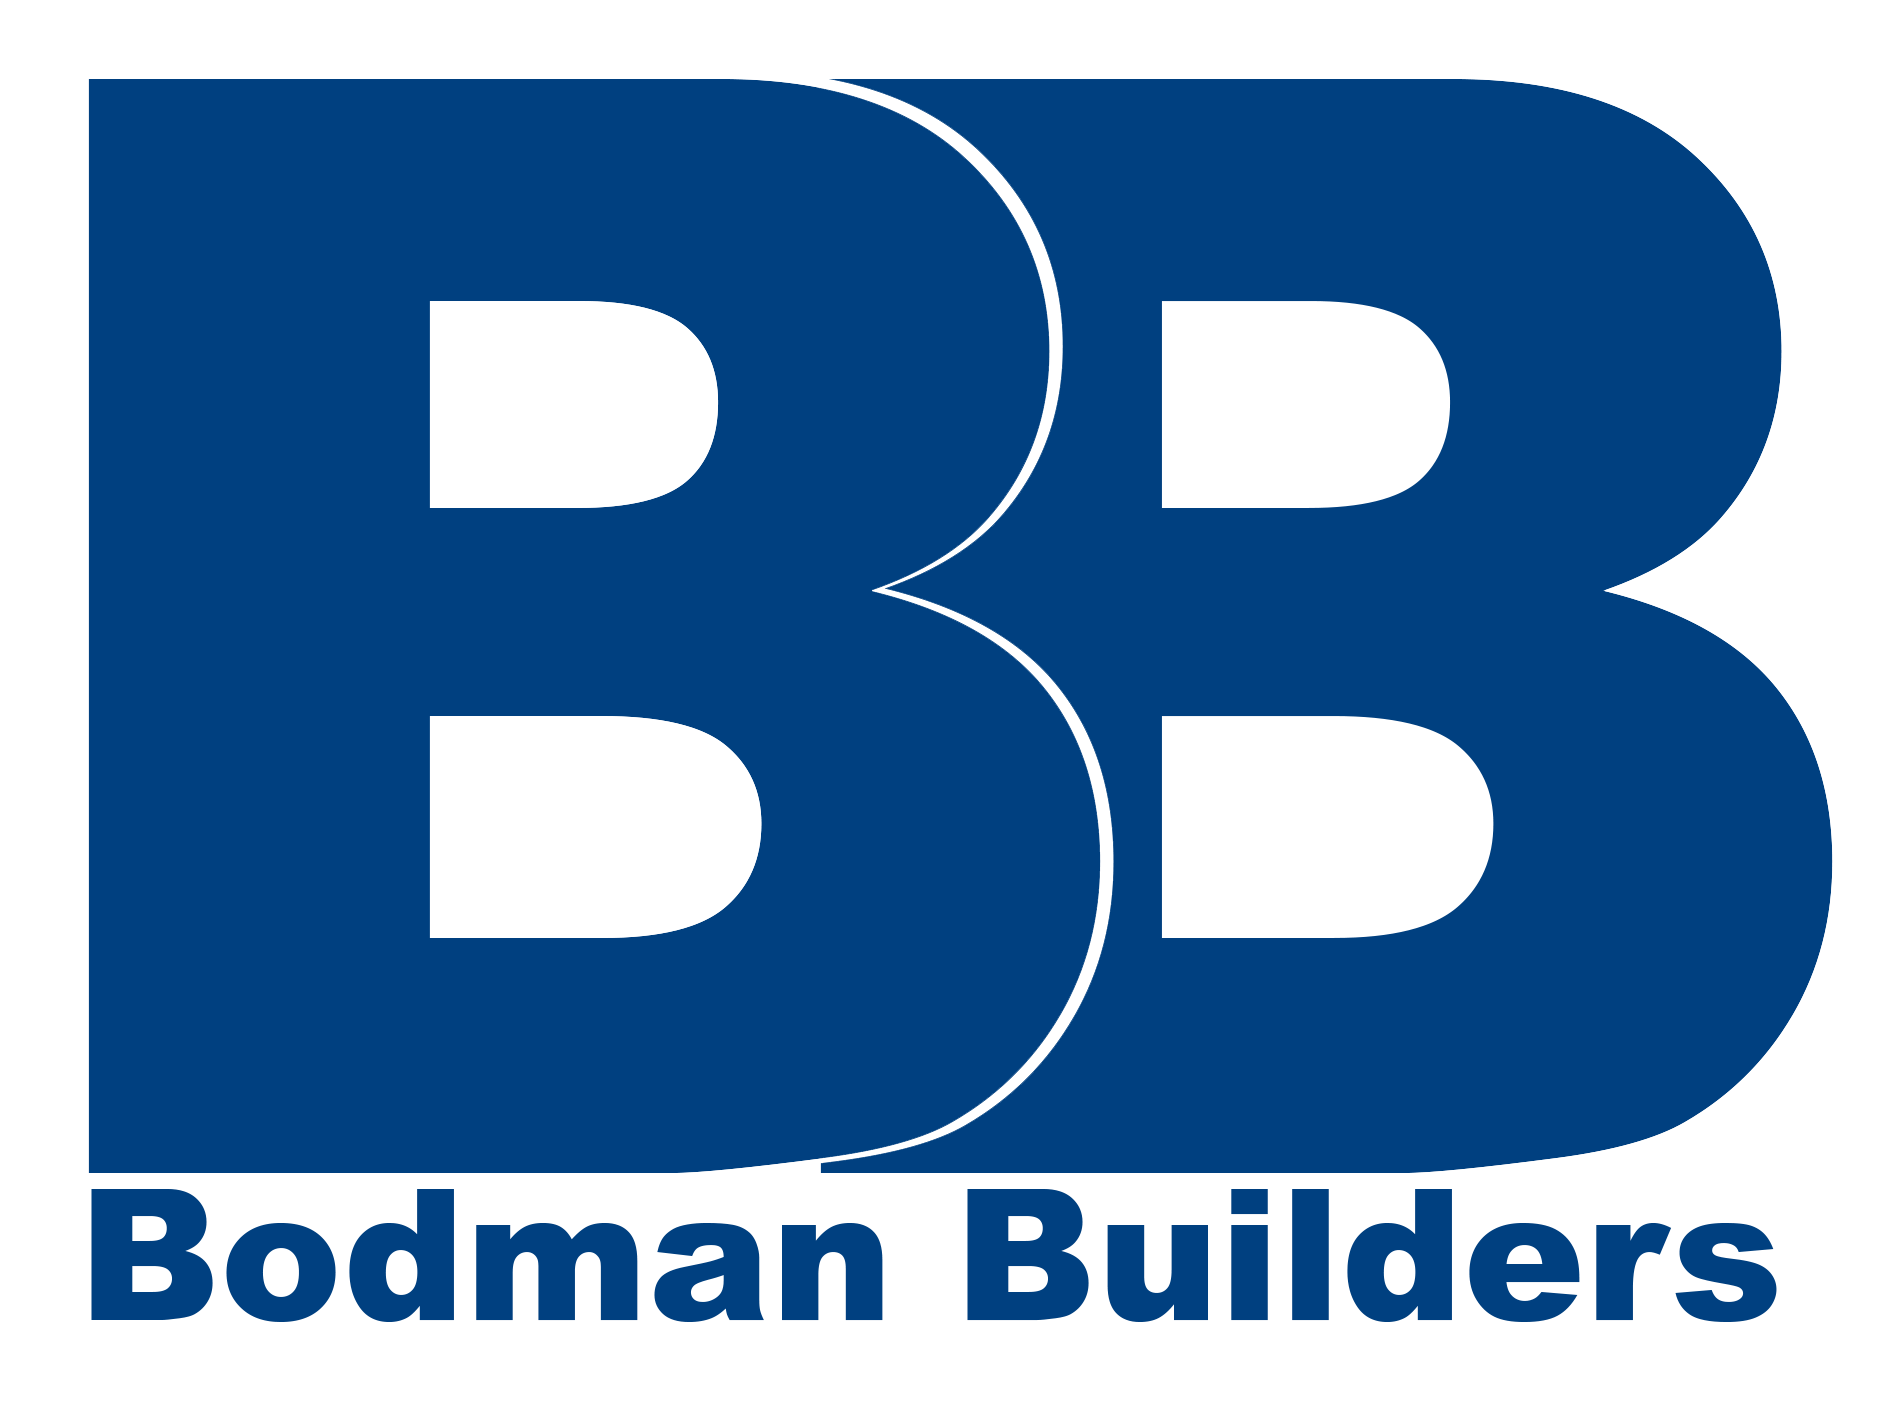 Bodman Builders